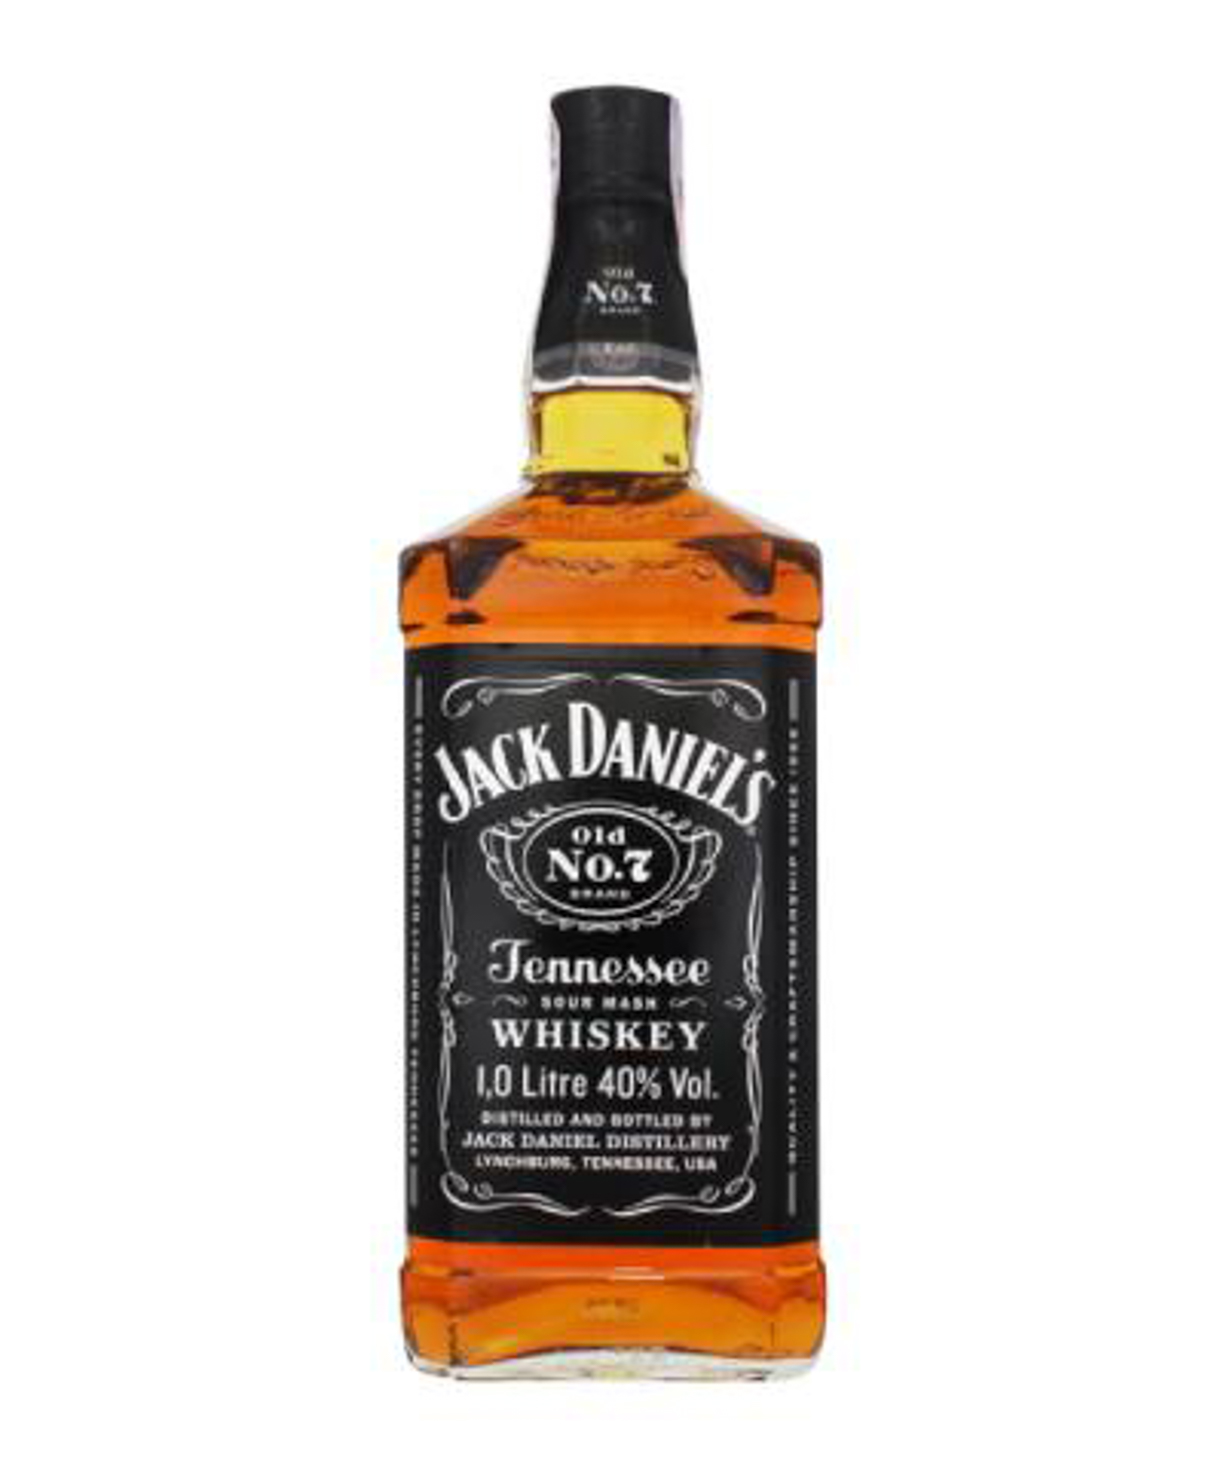 Վիսկի «Jack Daniel's Old №7» 1լ